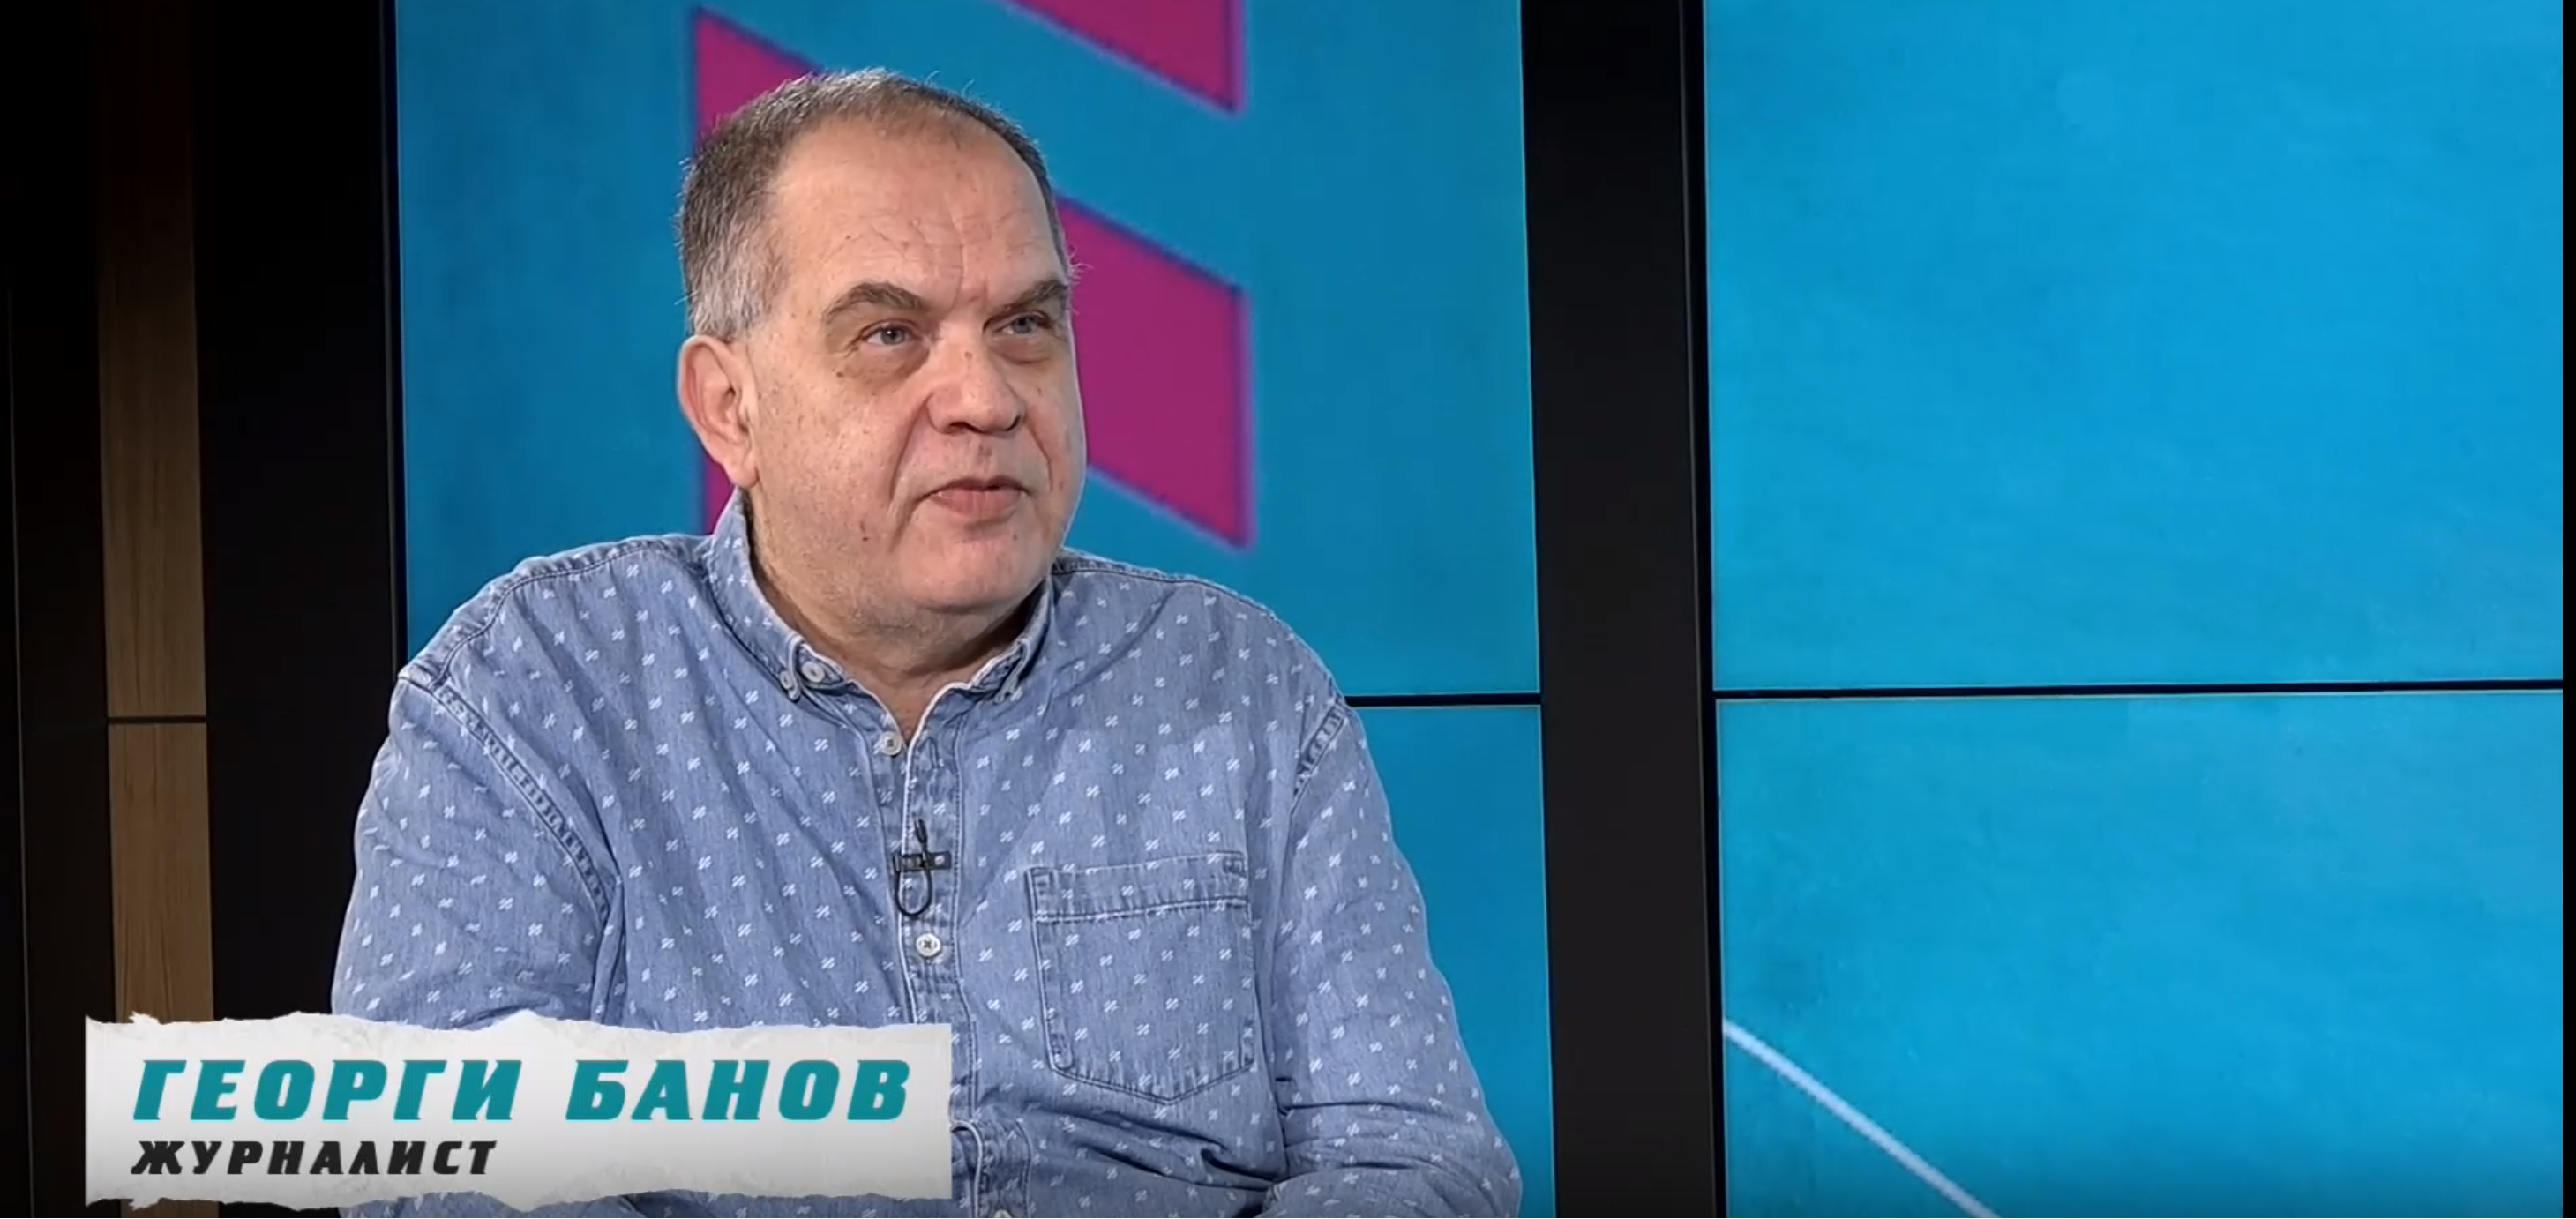 Георги Банов е спортен журналист със солиден стаж Отразявал е